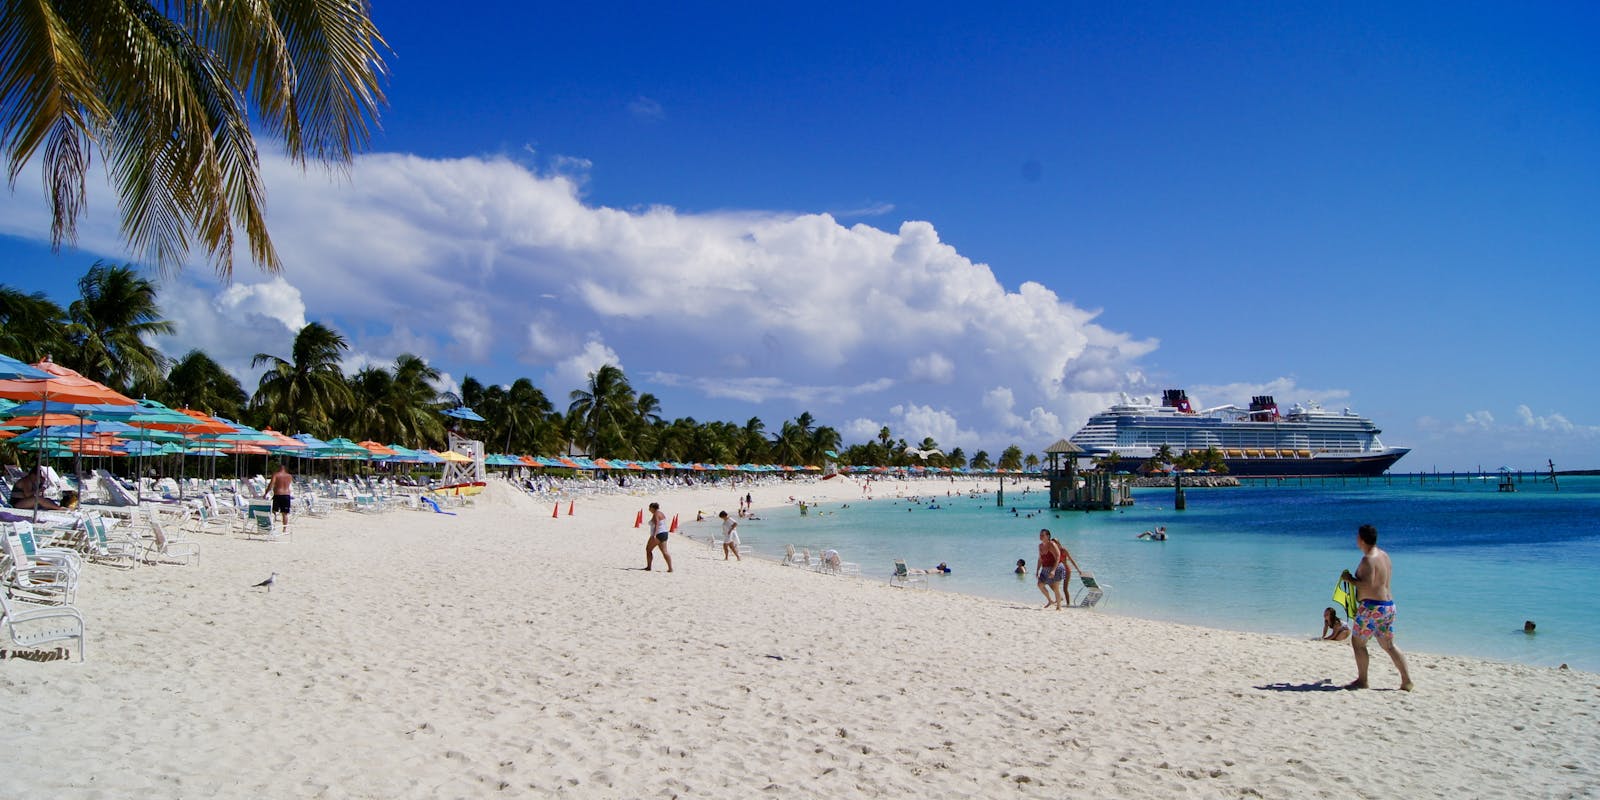 [REPORTAGE] Castaway Cay : l’île paradisiaque de Disney